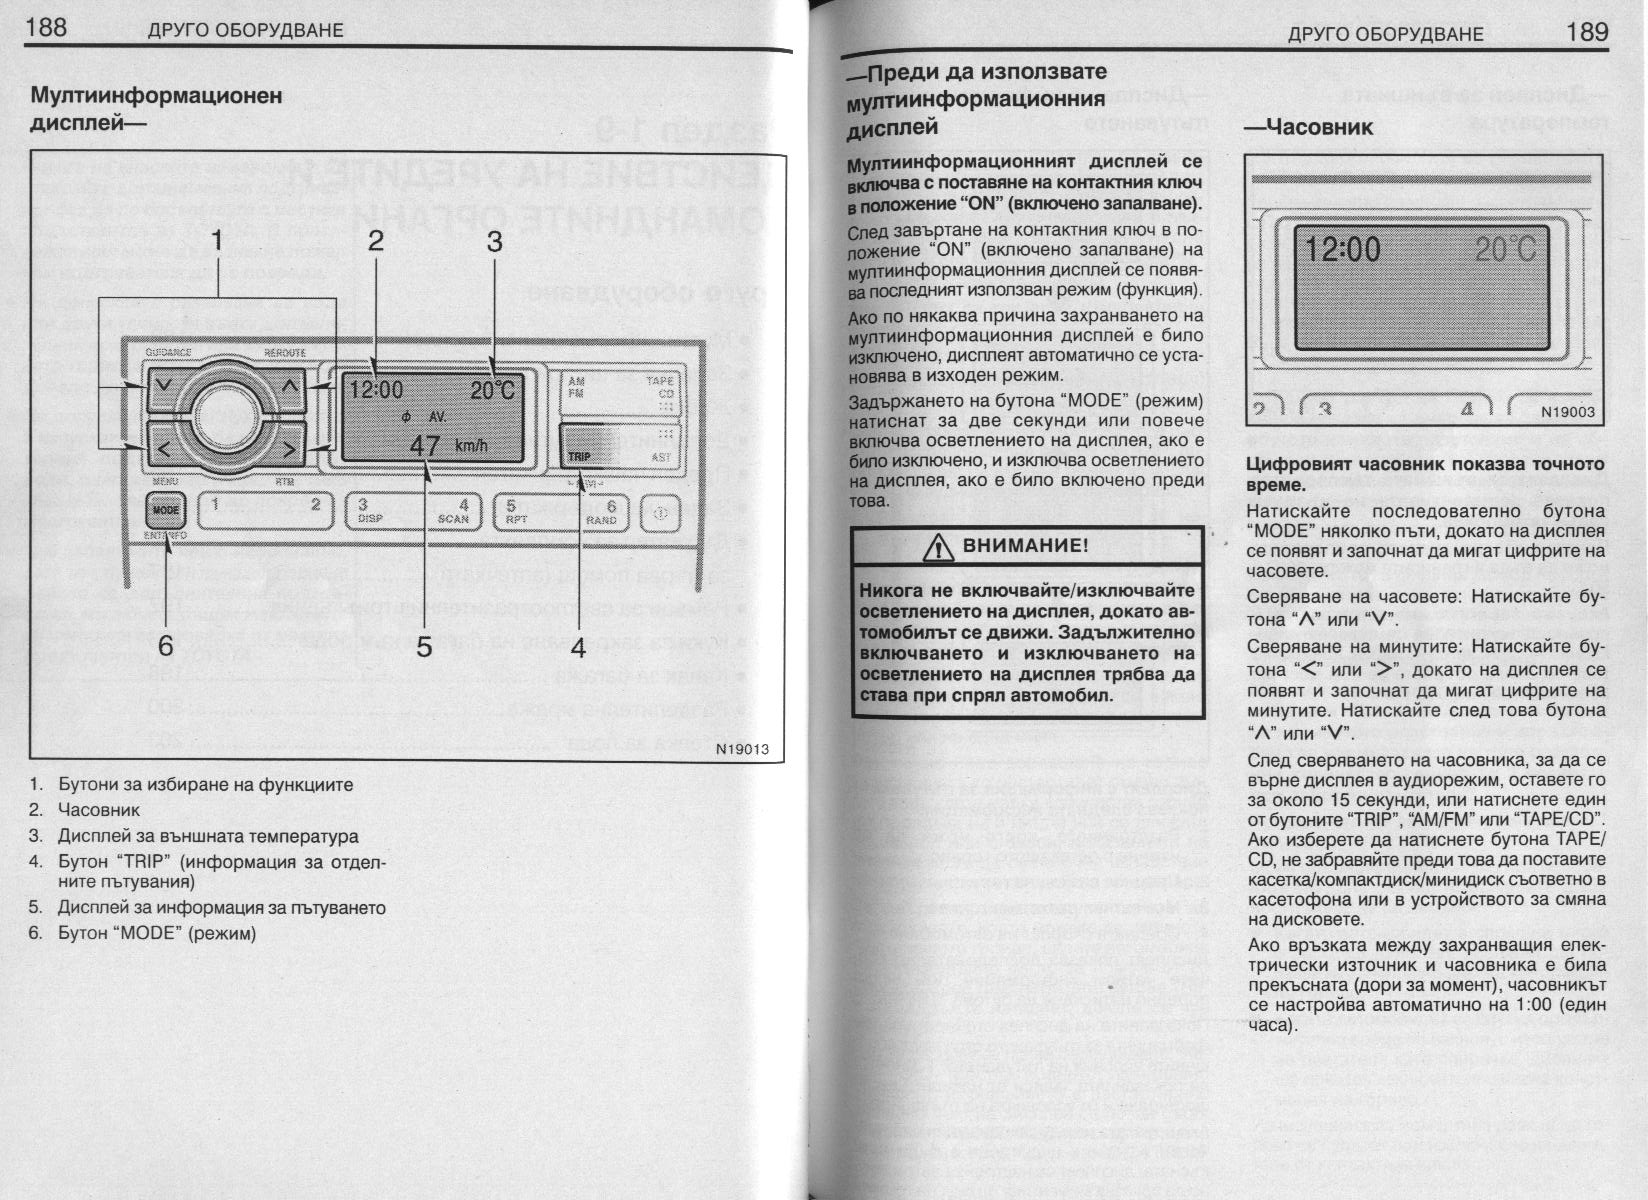 BG-user_manual_Avensis_2001_Page_188.jpg